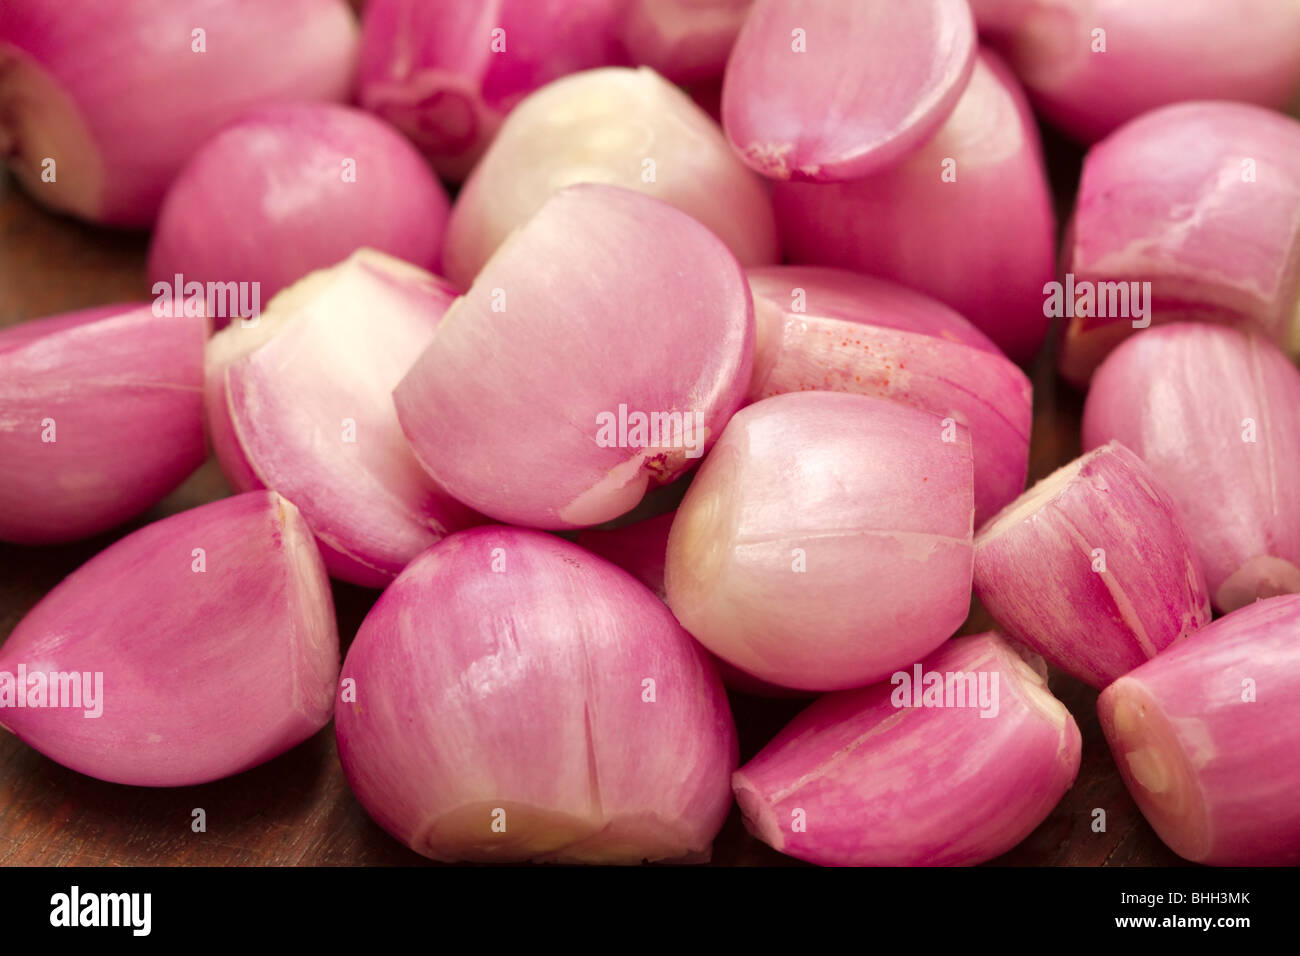 Peeled shallots Stock Photo